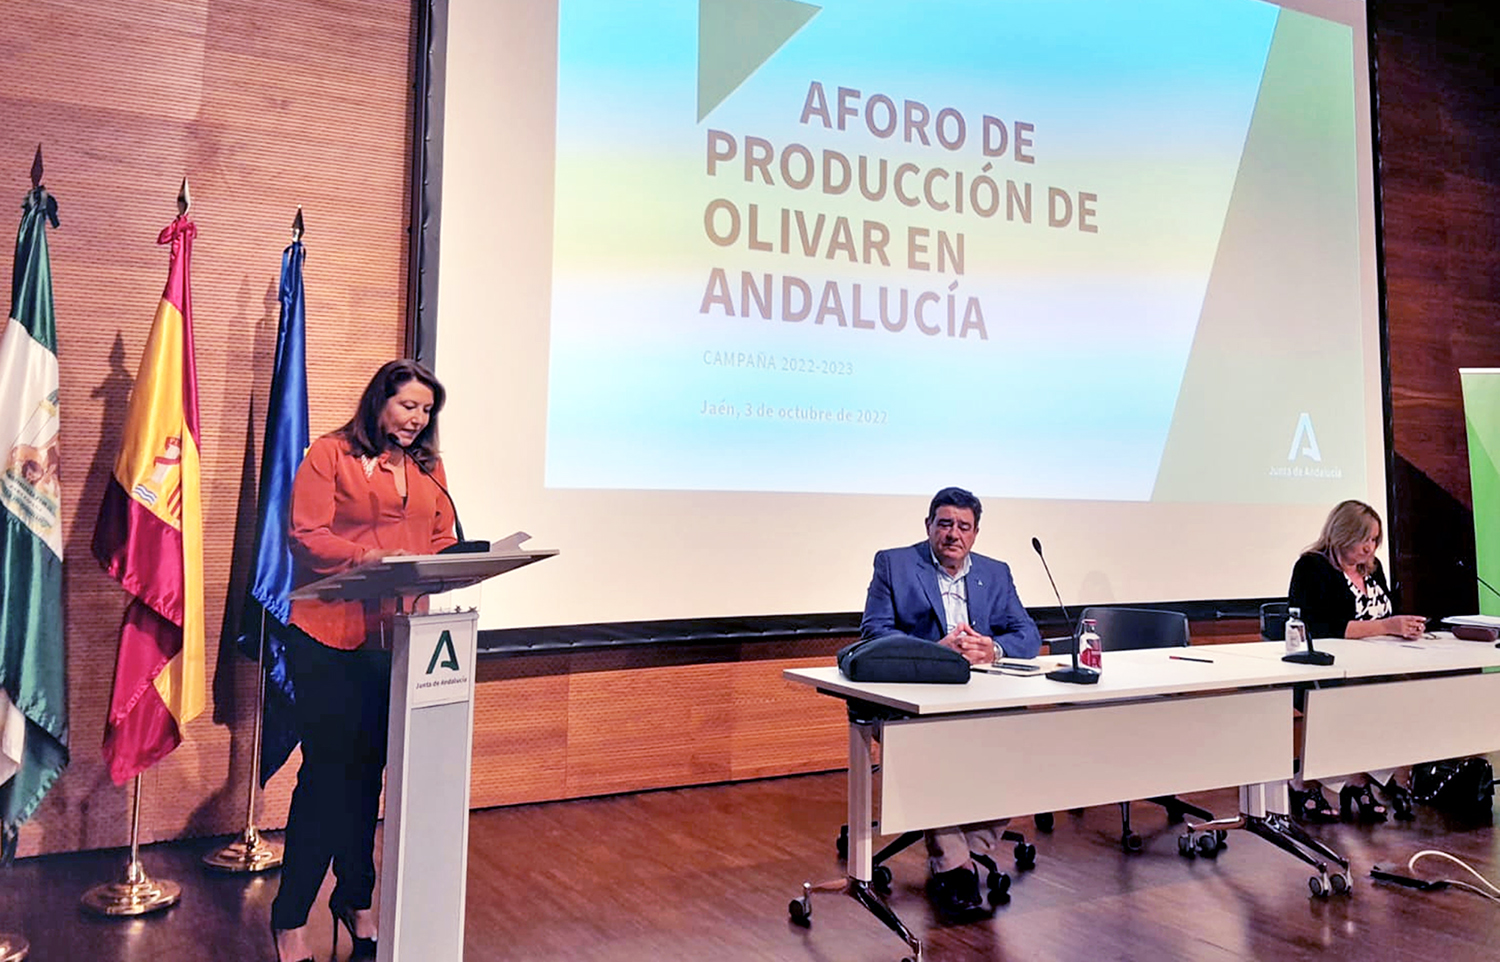 Andalucía solo producirá 587.000 Tm de aceite la próxima campaña, un 49% menos respecto a lo producido el año pasado, 1,152.000 Tm